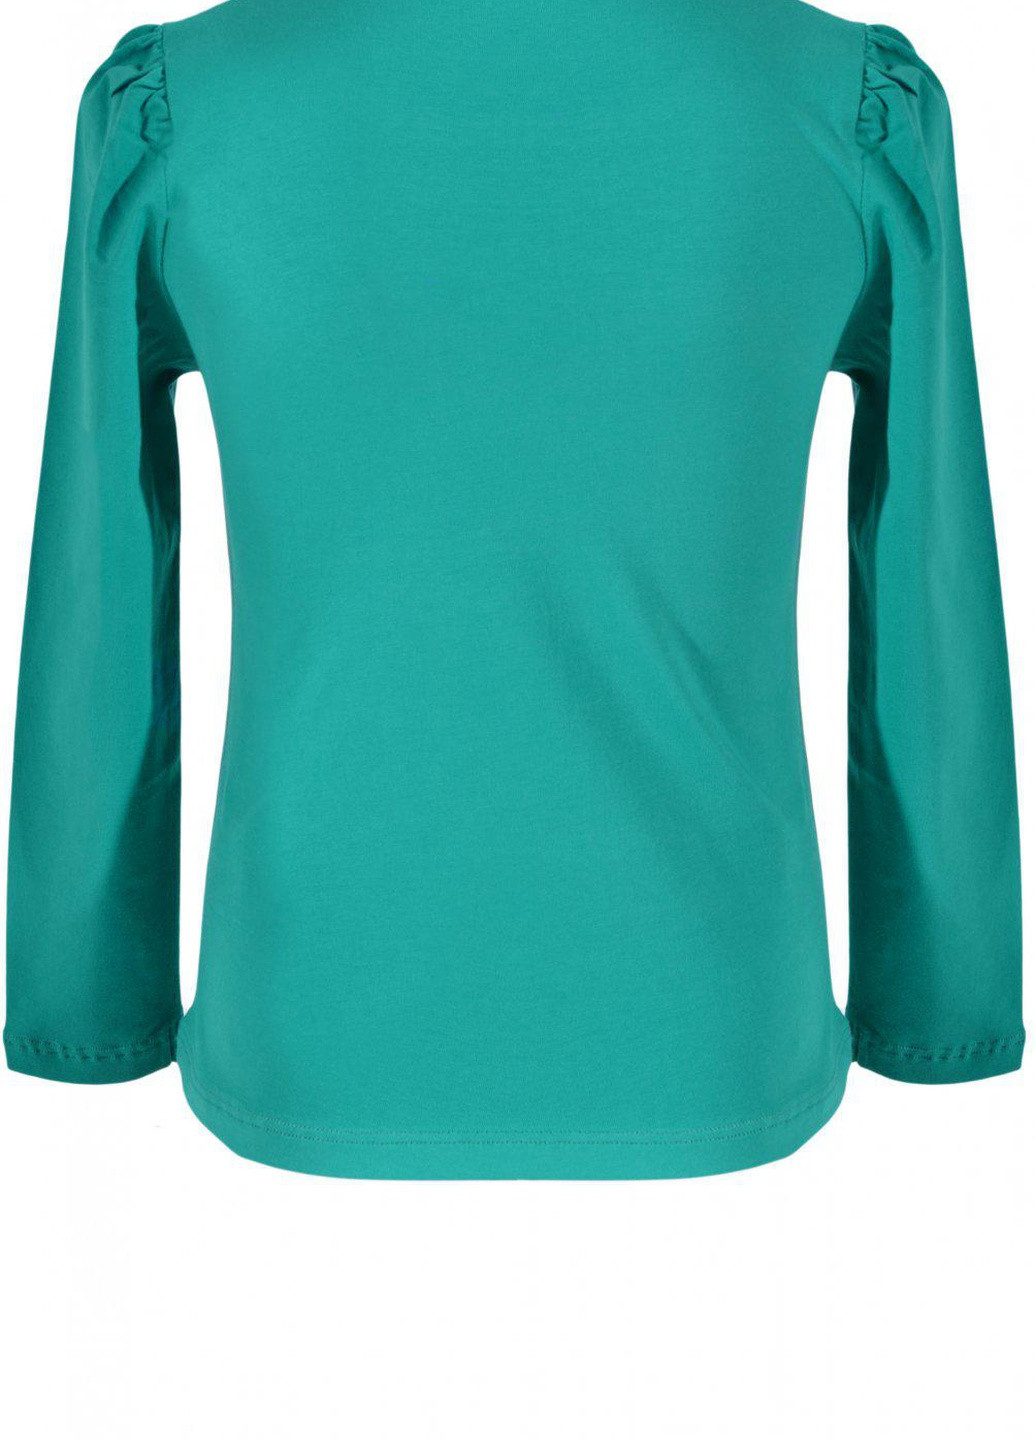 Синя футболки батник дівчинка (w019-28) Lemanta